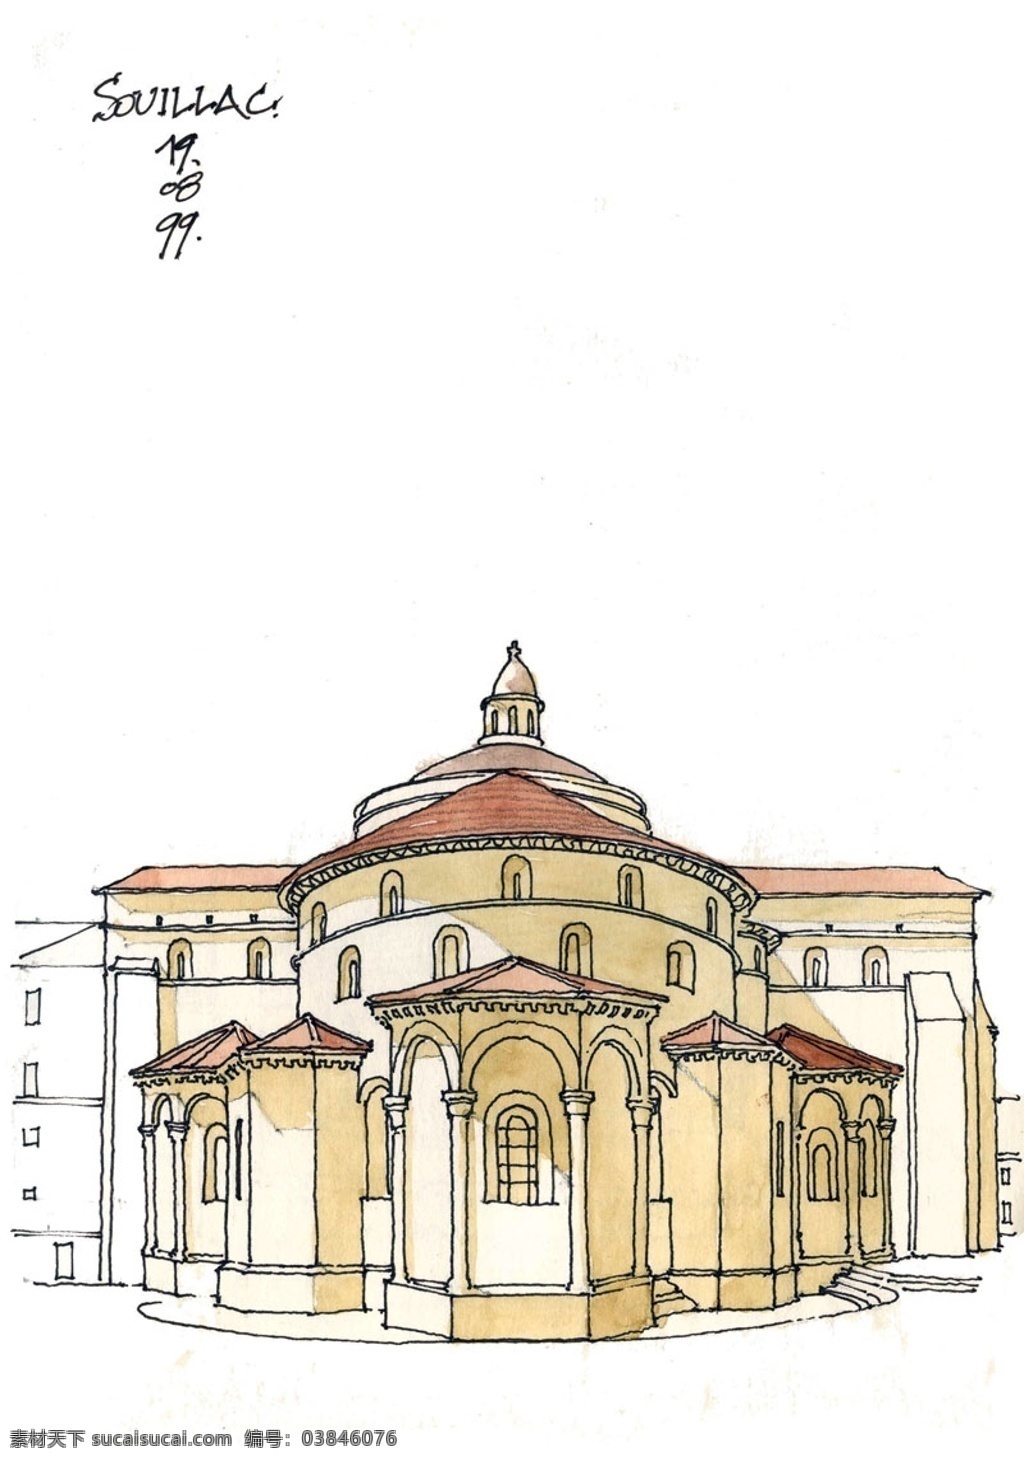 欧式 彩色 建筑 效果图 平面图 手绘图 图纸 城堡 建筑施工图 建筑平面图 欧式建筑 建筑效果图